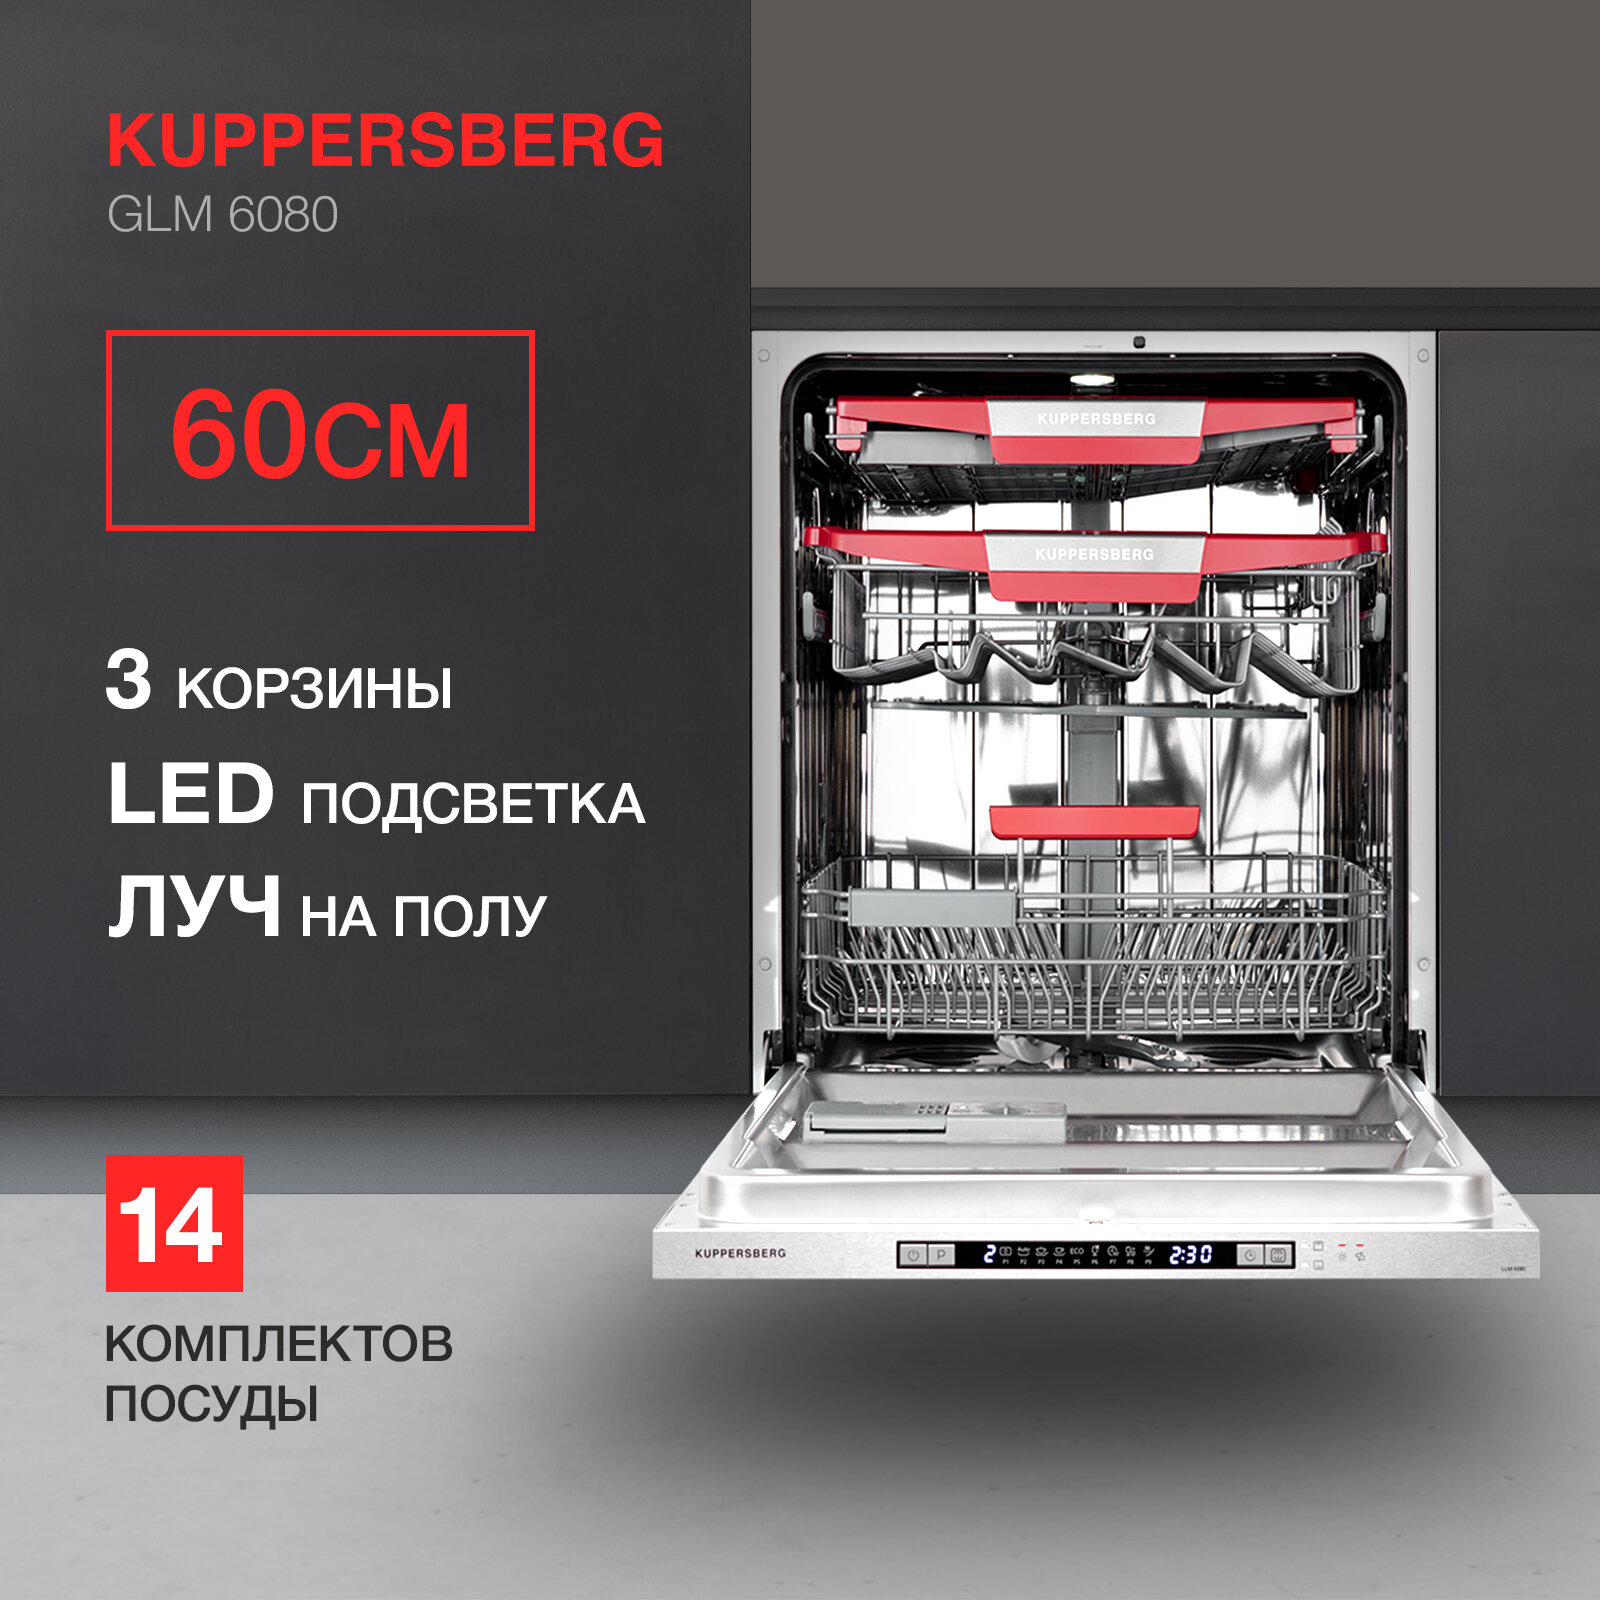 Встраиваемая посудомоечная машина KUPPERSBERG GLM 6080, лучом на полу, авто-открыванием